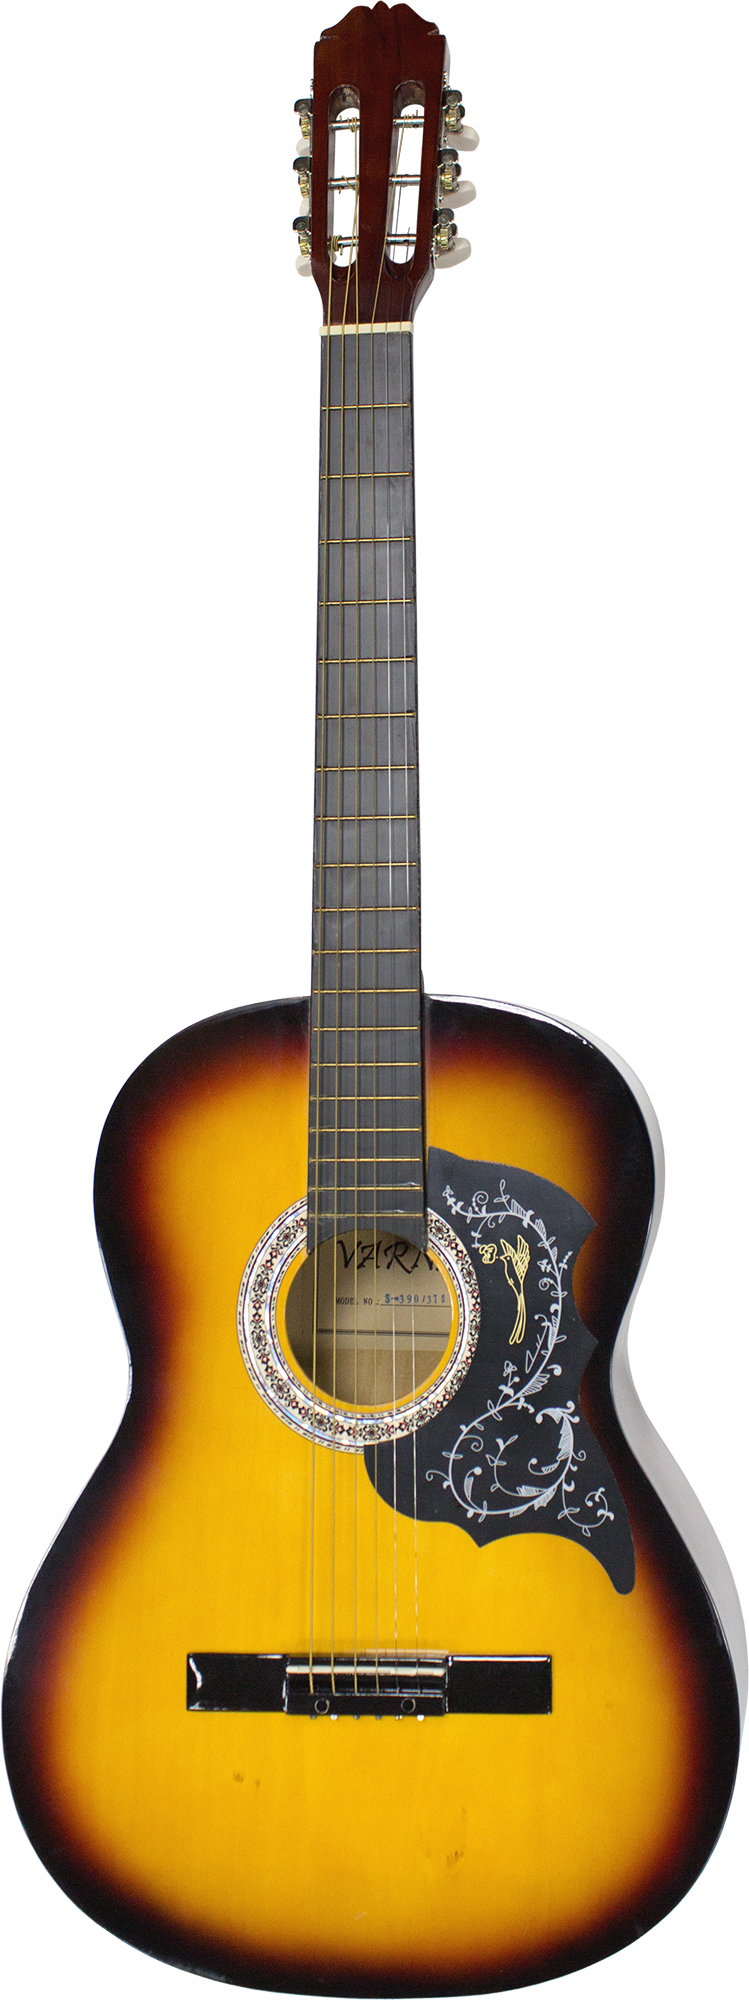 Акустическая гитара Varna S-390 3TS